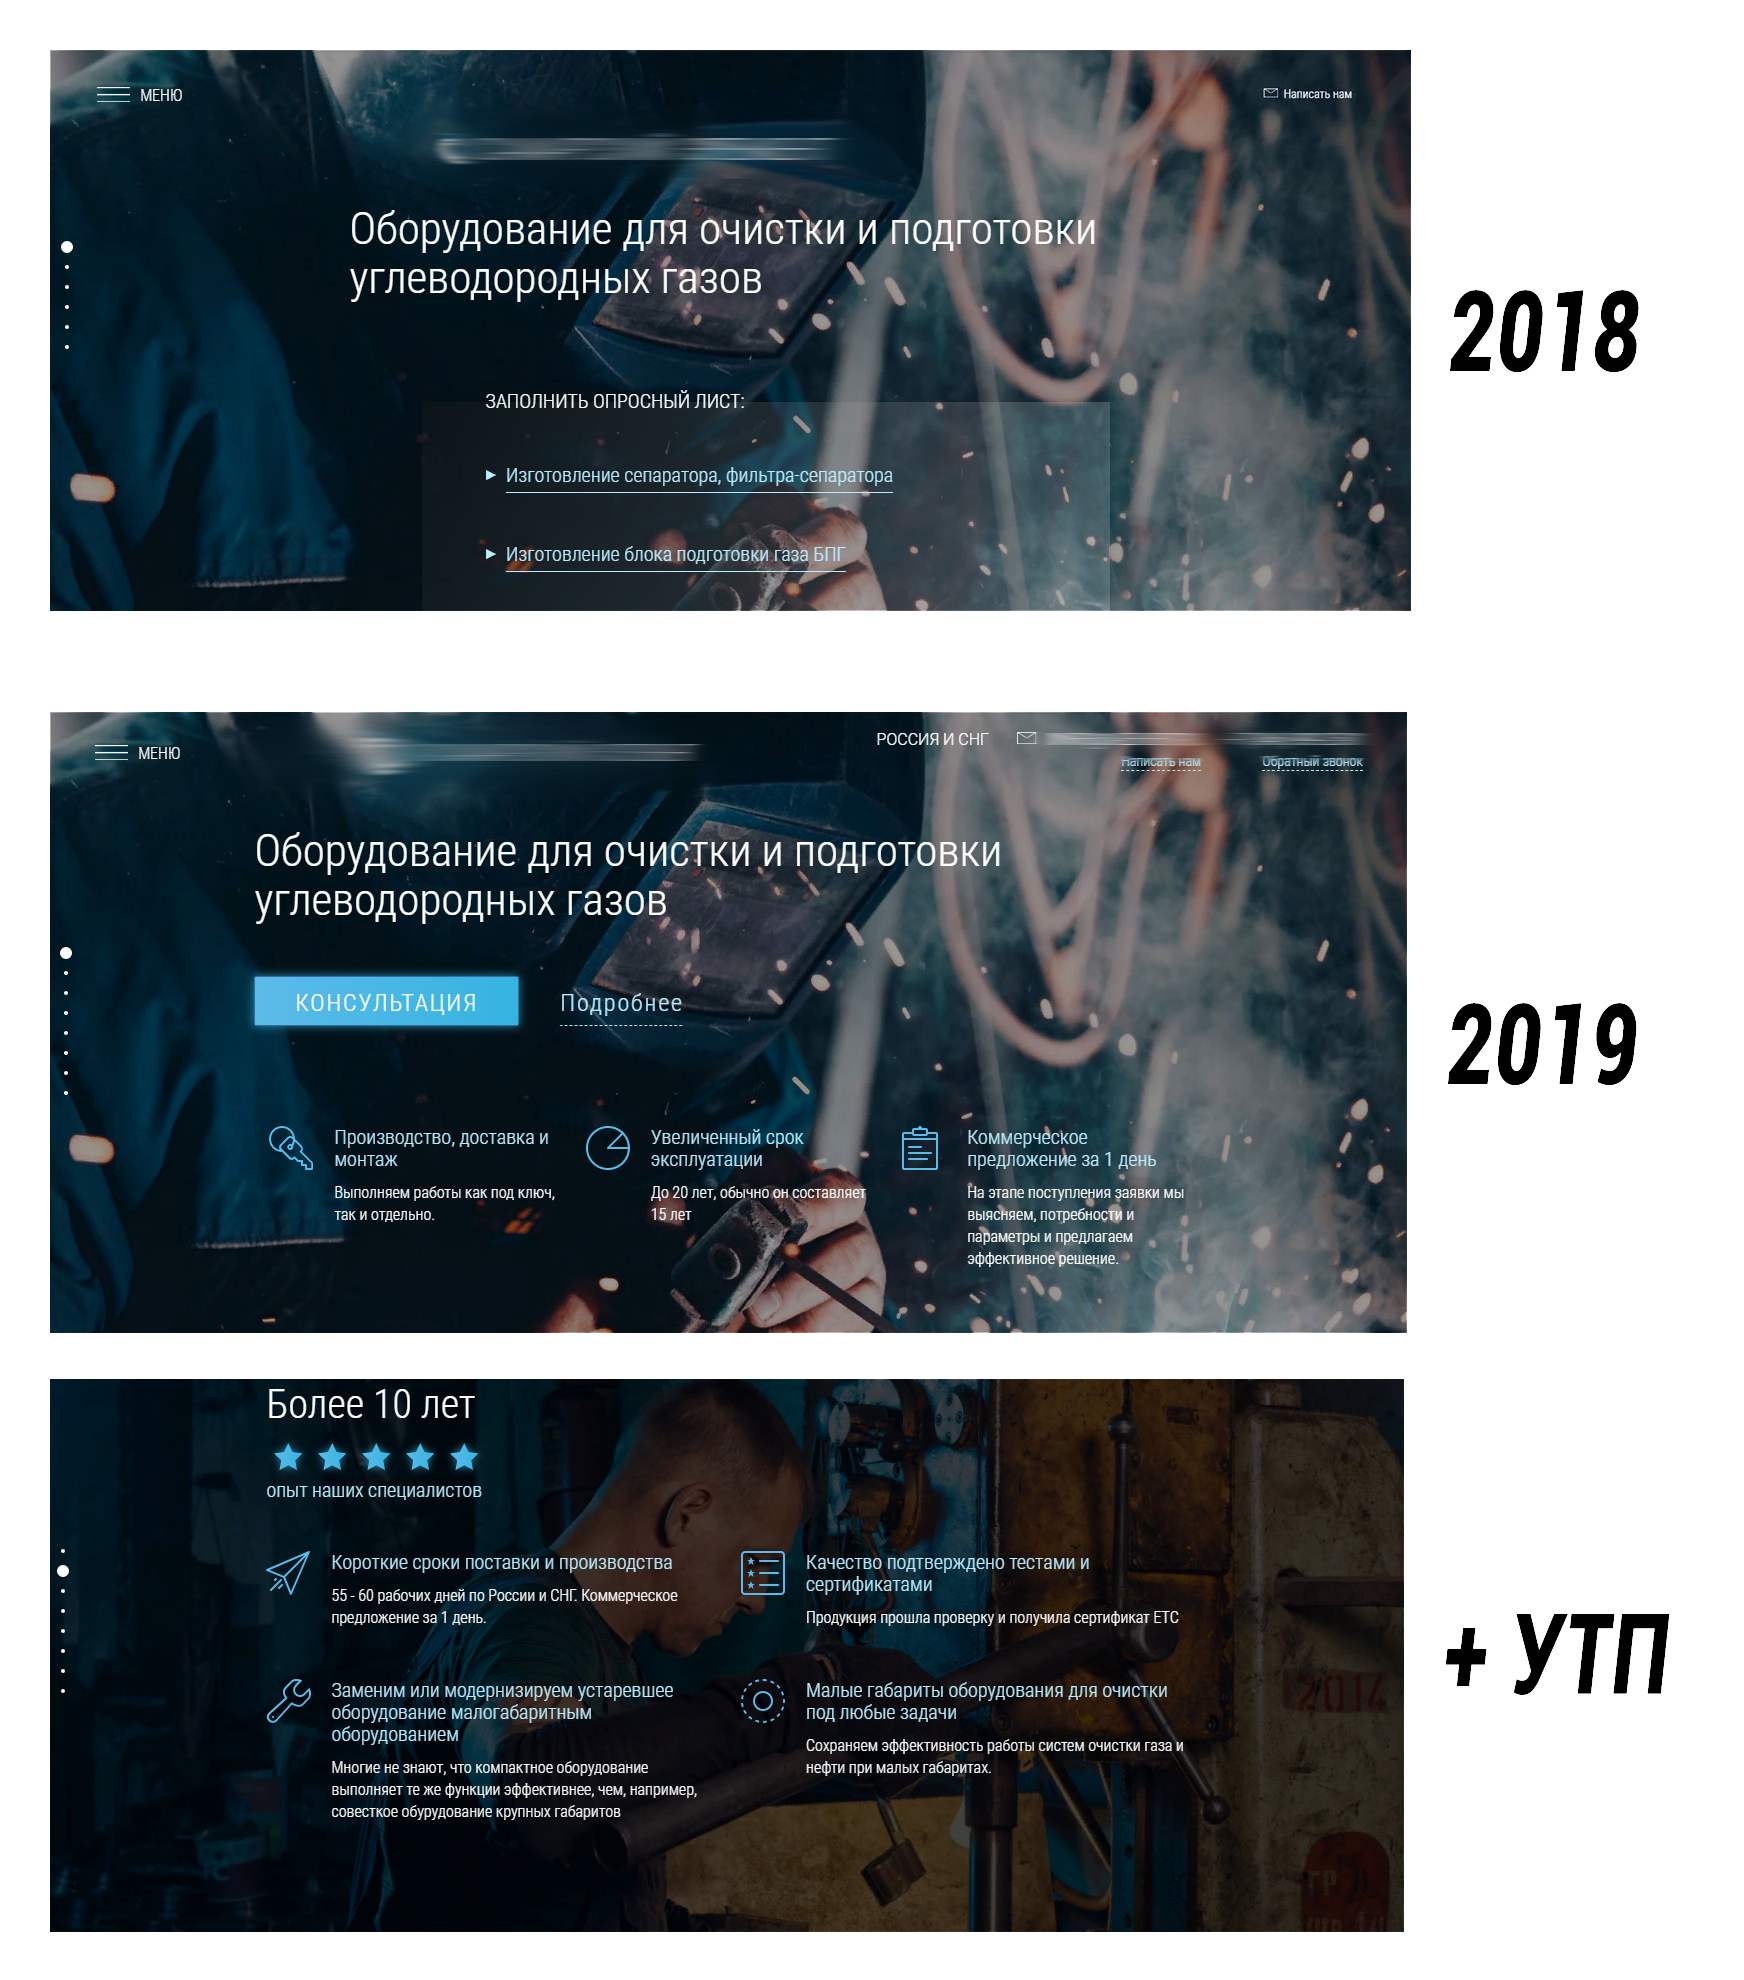 Версии сайта в 2018 и 2019 годах